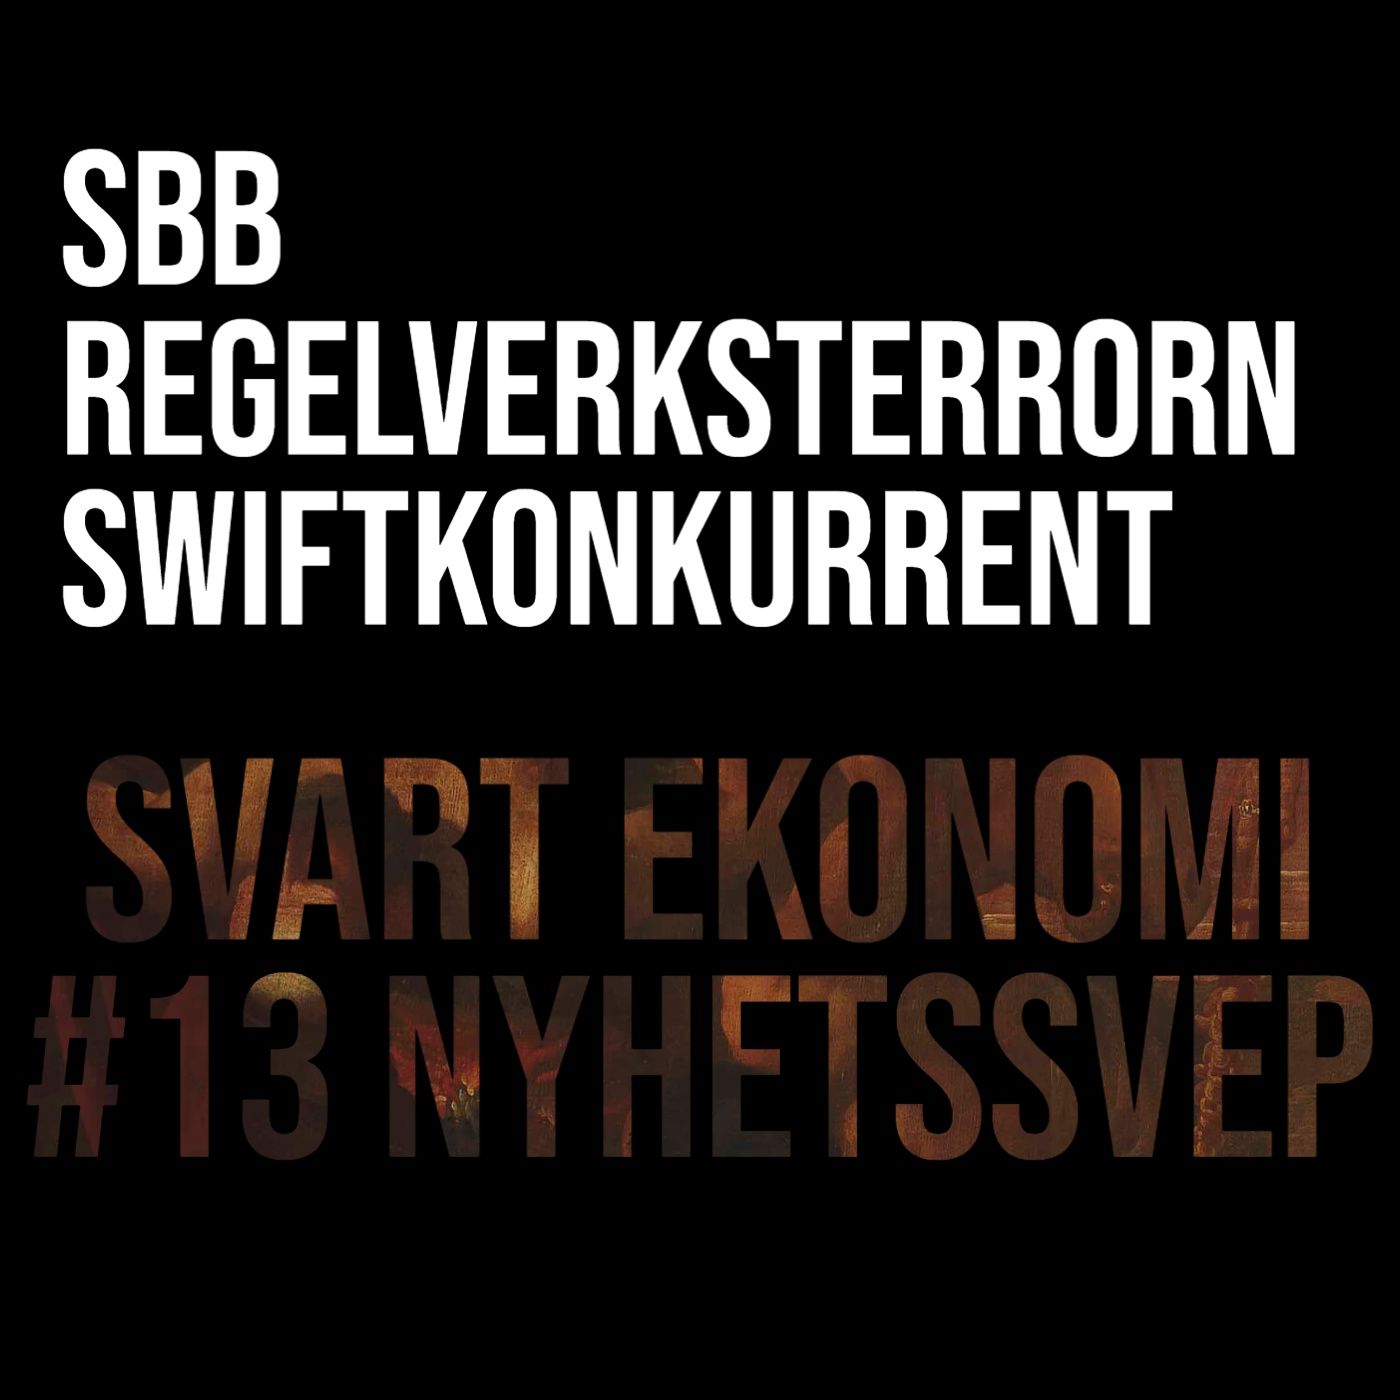 image from 13 - Nyhetssvep - SBB, regelverksterror och ny swiftkonkurrent